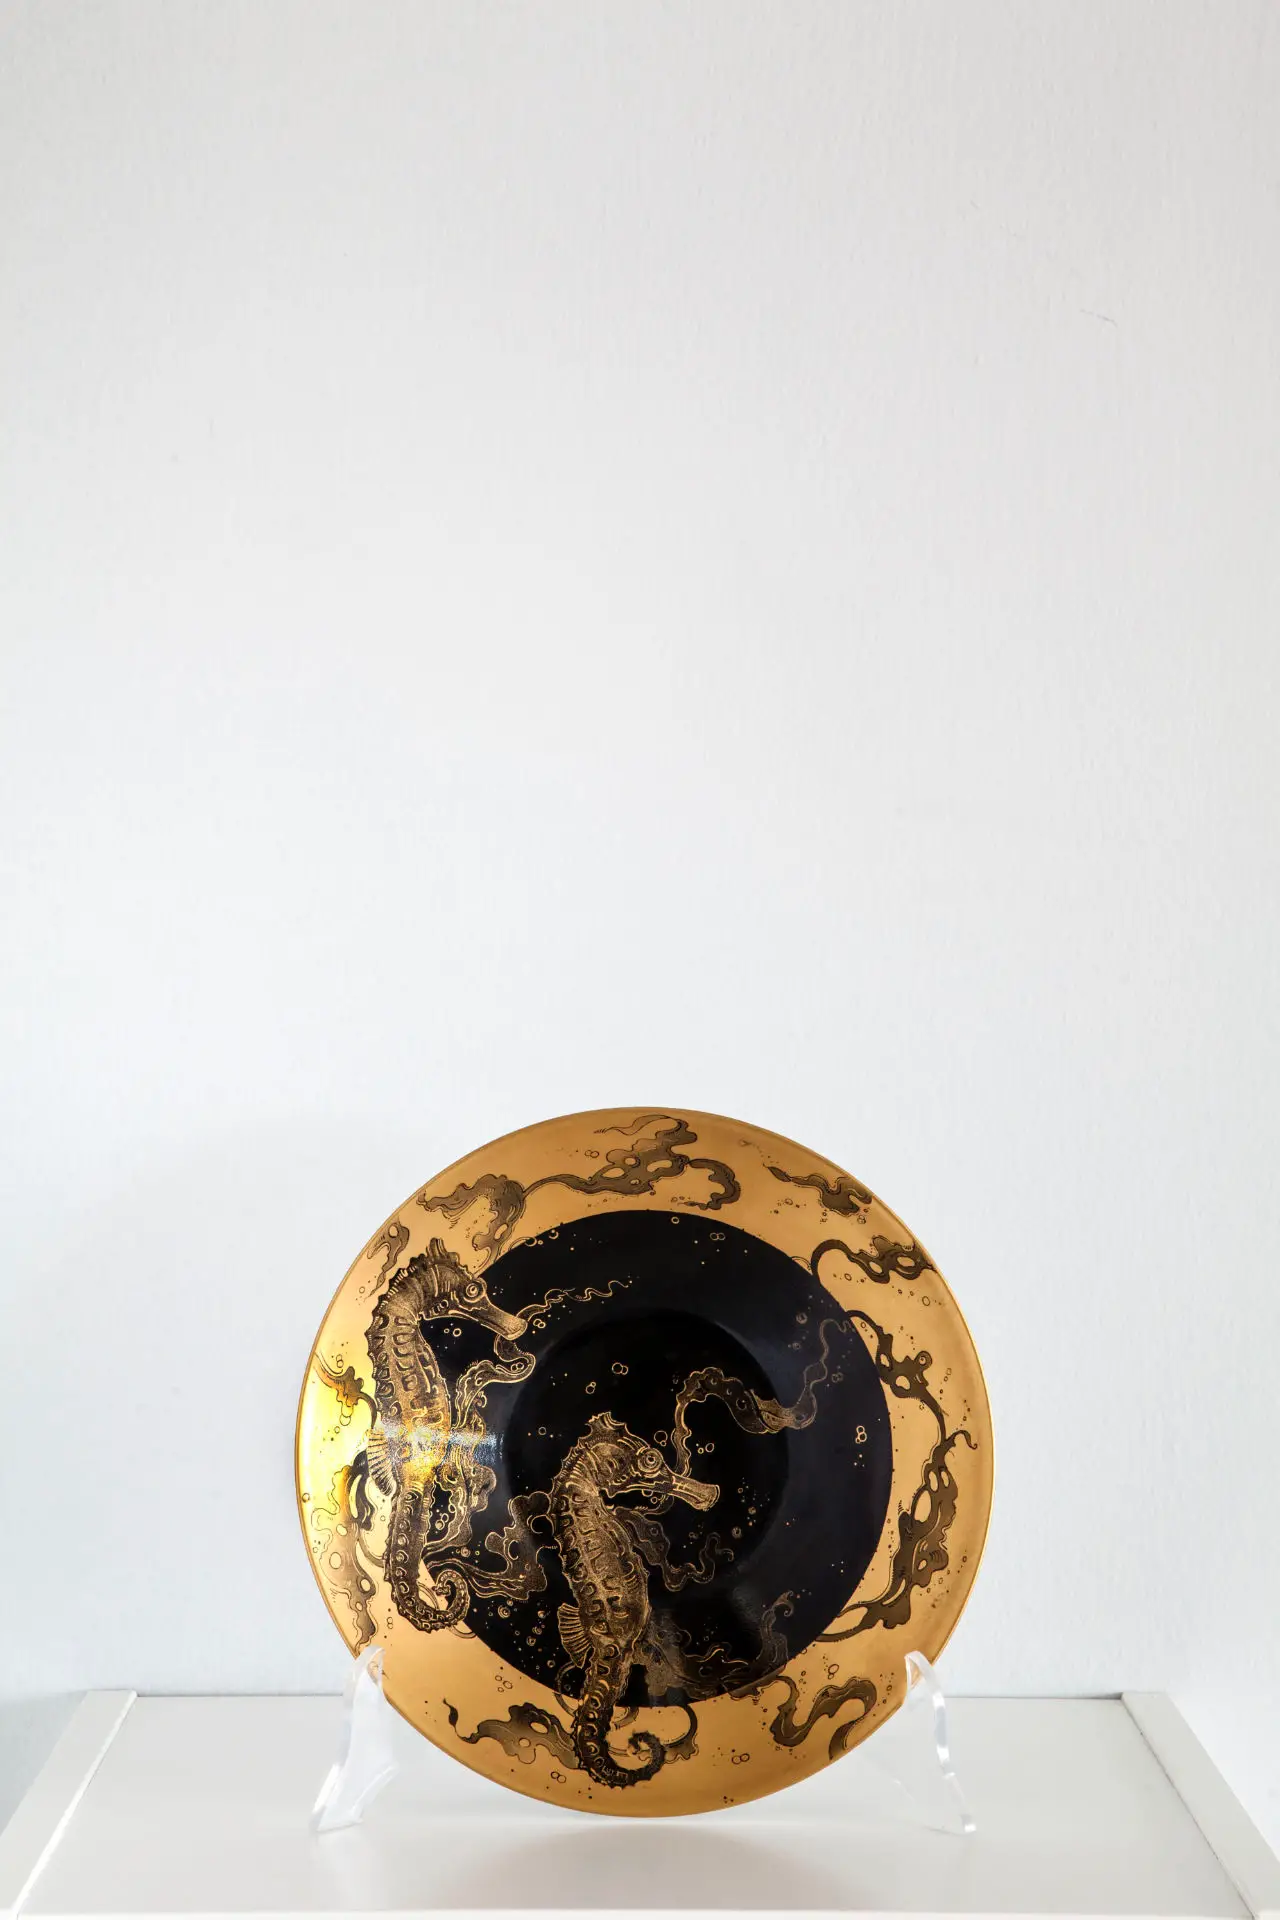 Una de las porcelanas pintadas por Ely Phenix con varios caballitos de mar dorados